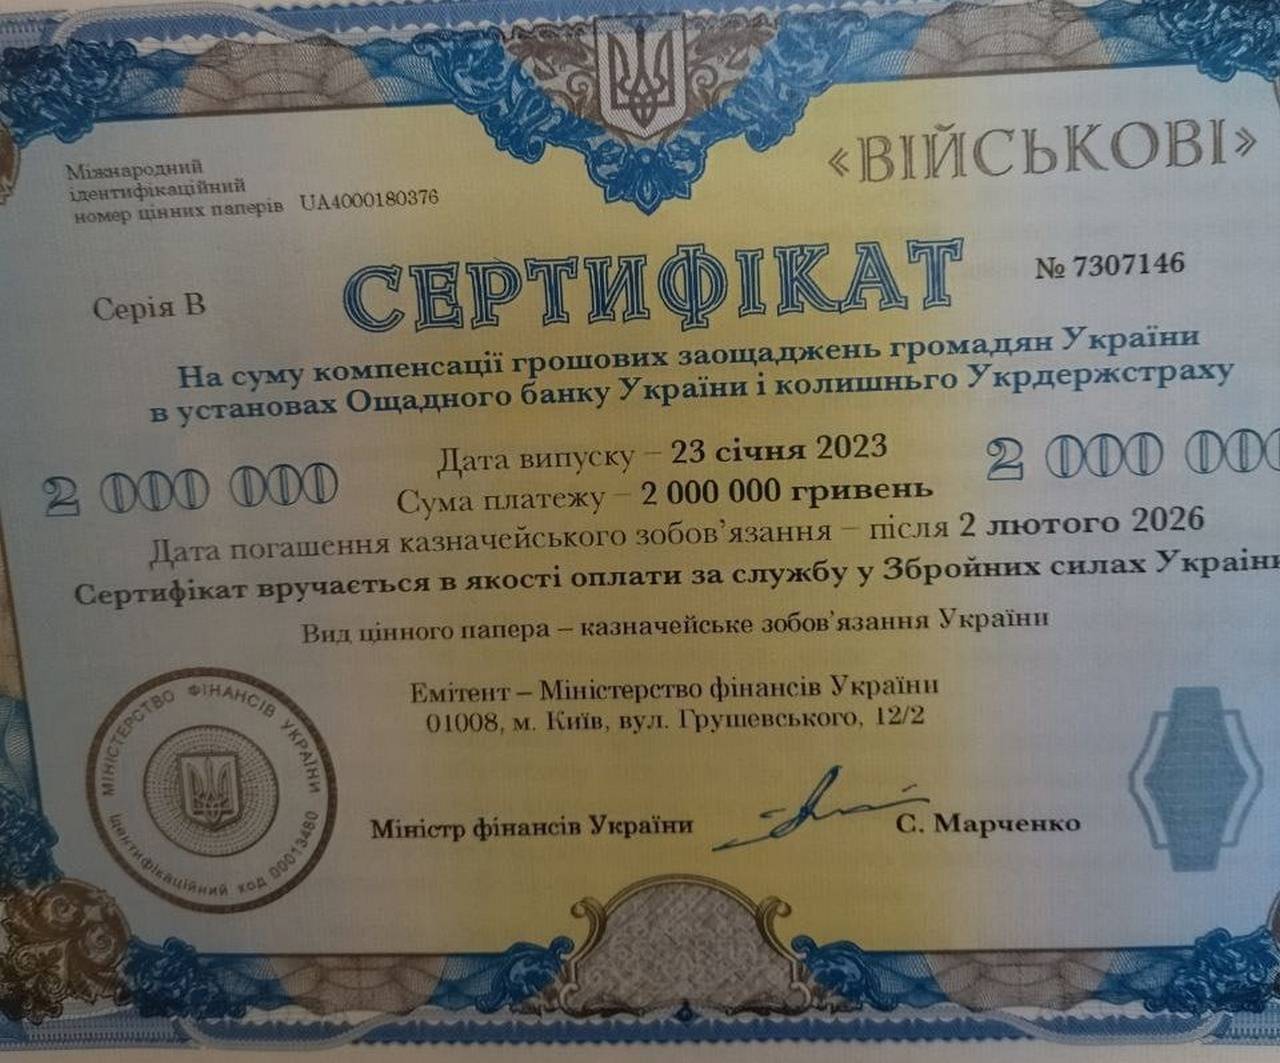 Украинским военным раздают сертификаты с погашением через 3 года вместо наличных гривен